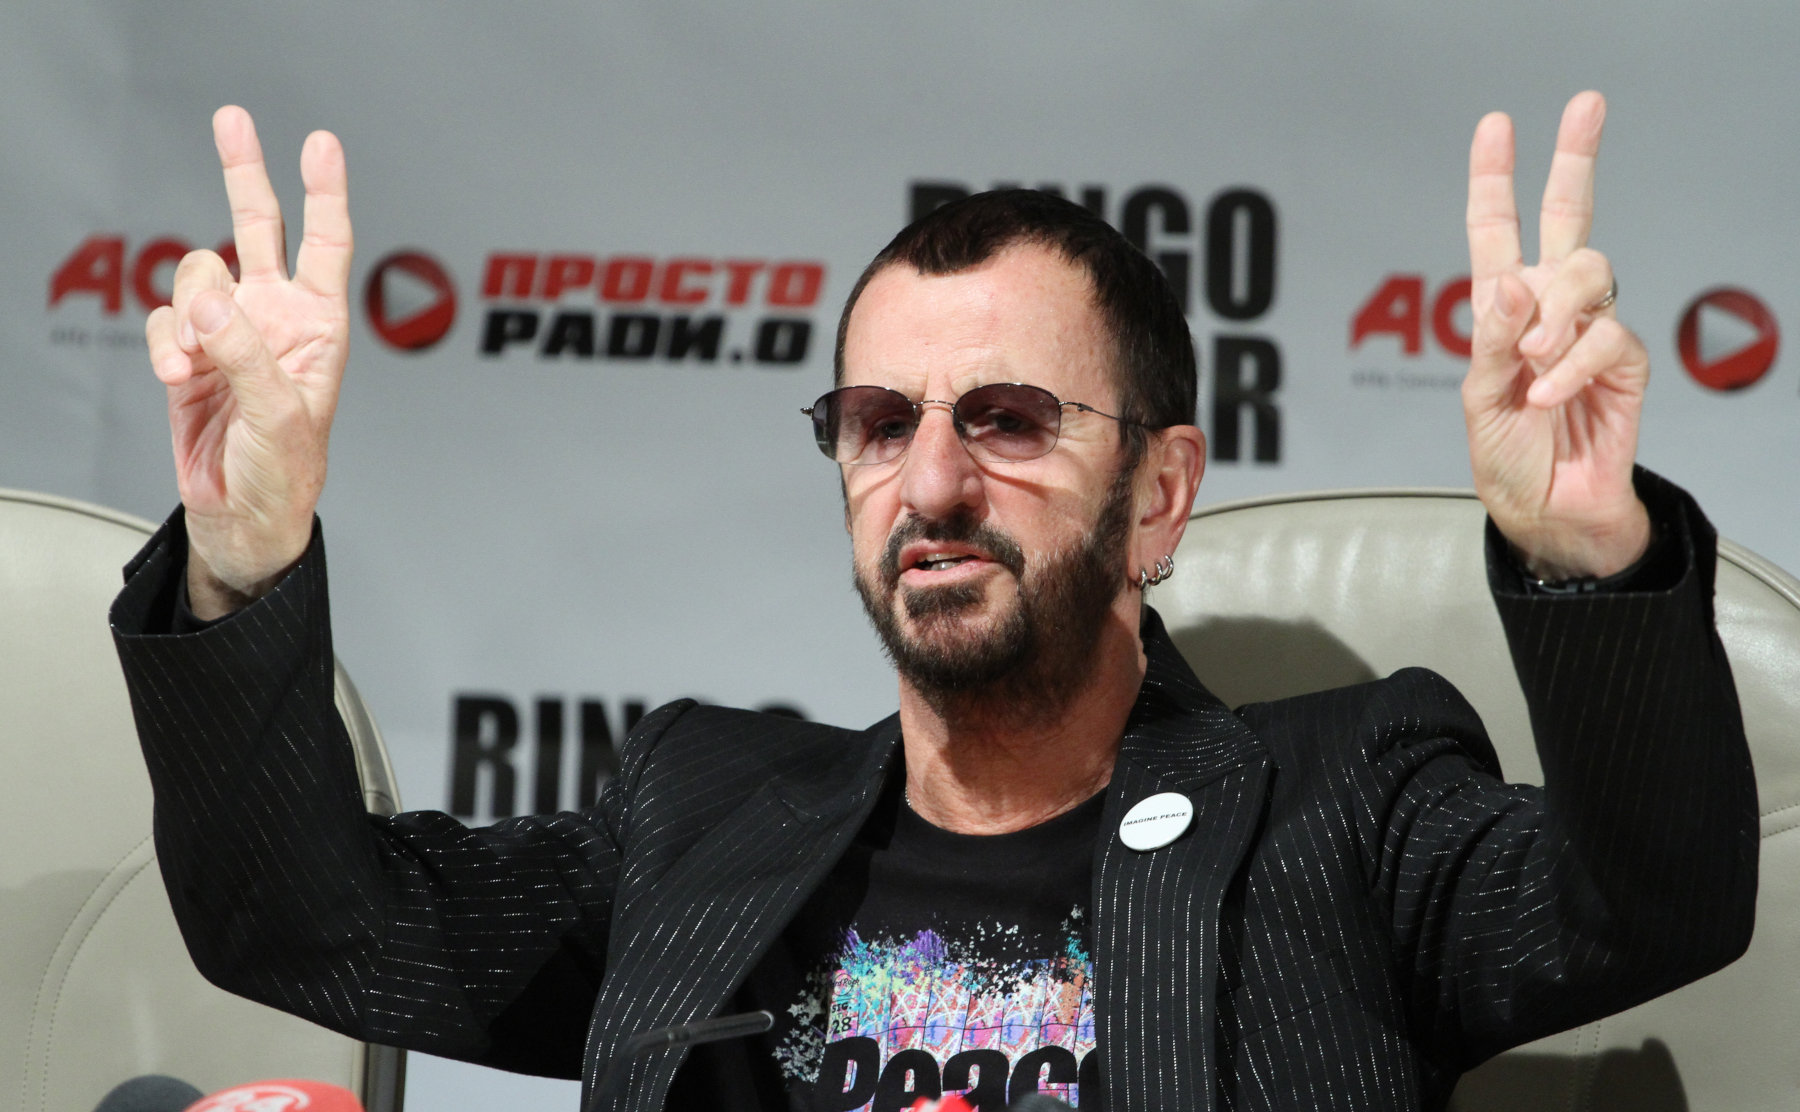 Από τον Ringo Starr στη Shakira: Οι celebrities και οι offshore εταιρείες στα Pandora Papers